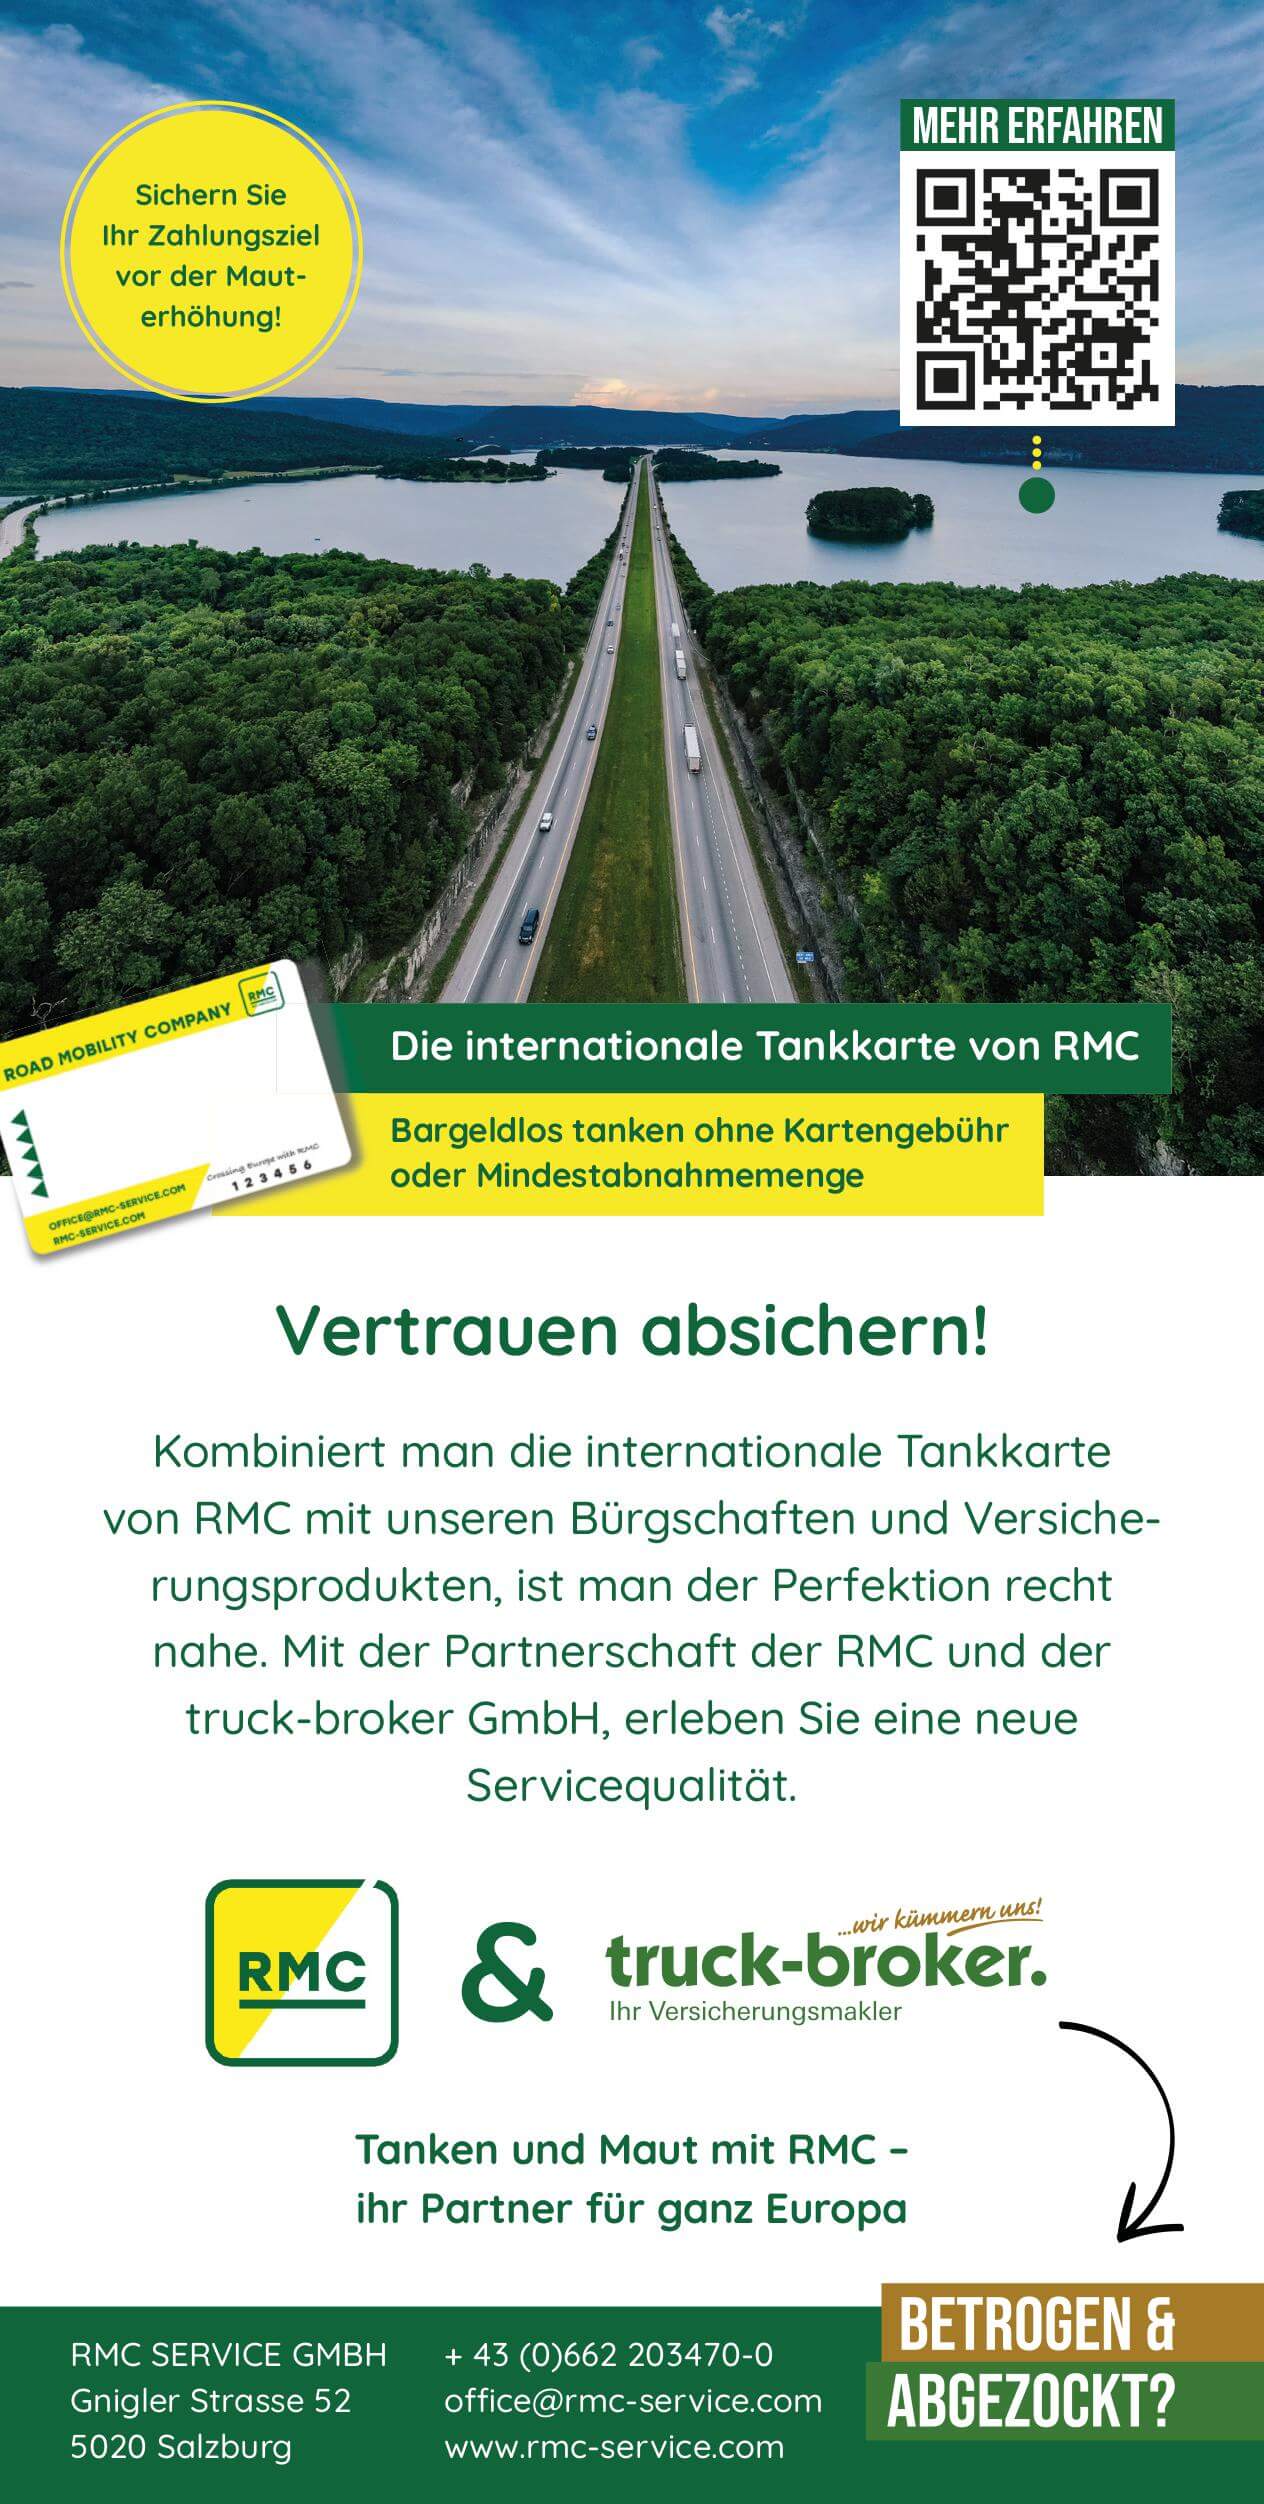 In Kombination mit der RMC Tankkarte und den Versicherungsprodukten der truck-broker GmbH genießen Sie umfassenden Schutz und Sicherheit für Ihr Unternehmen.